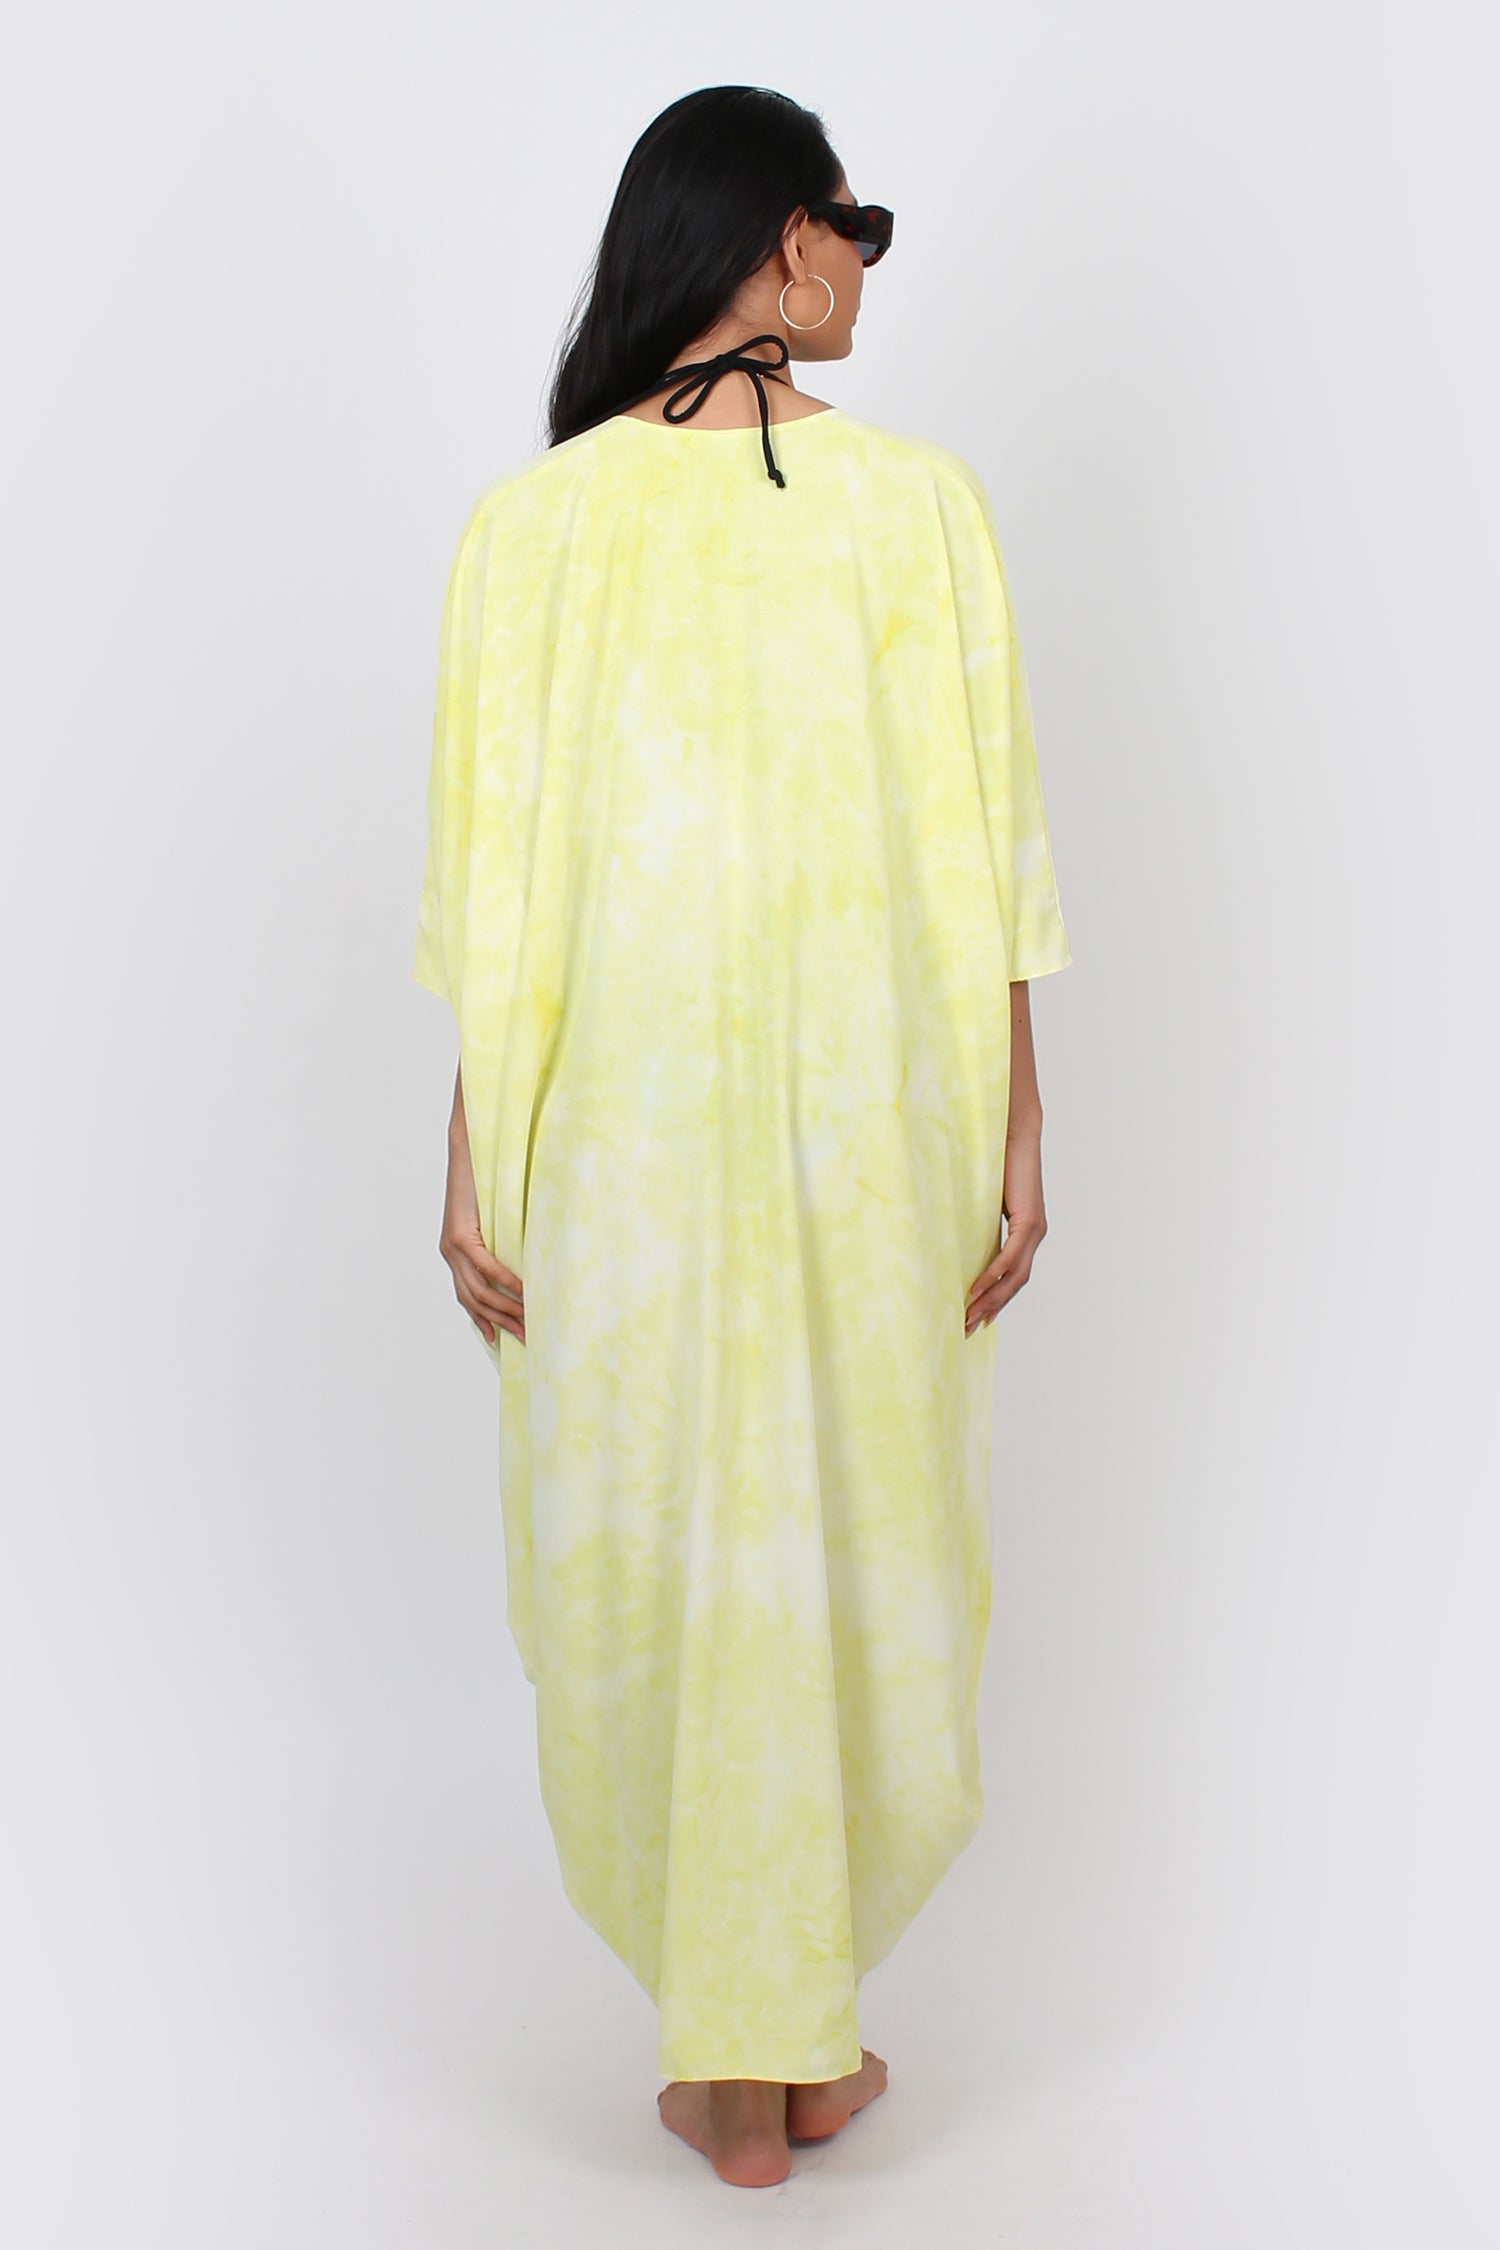 Mina Maxi kaftan yellow and white tie dye